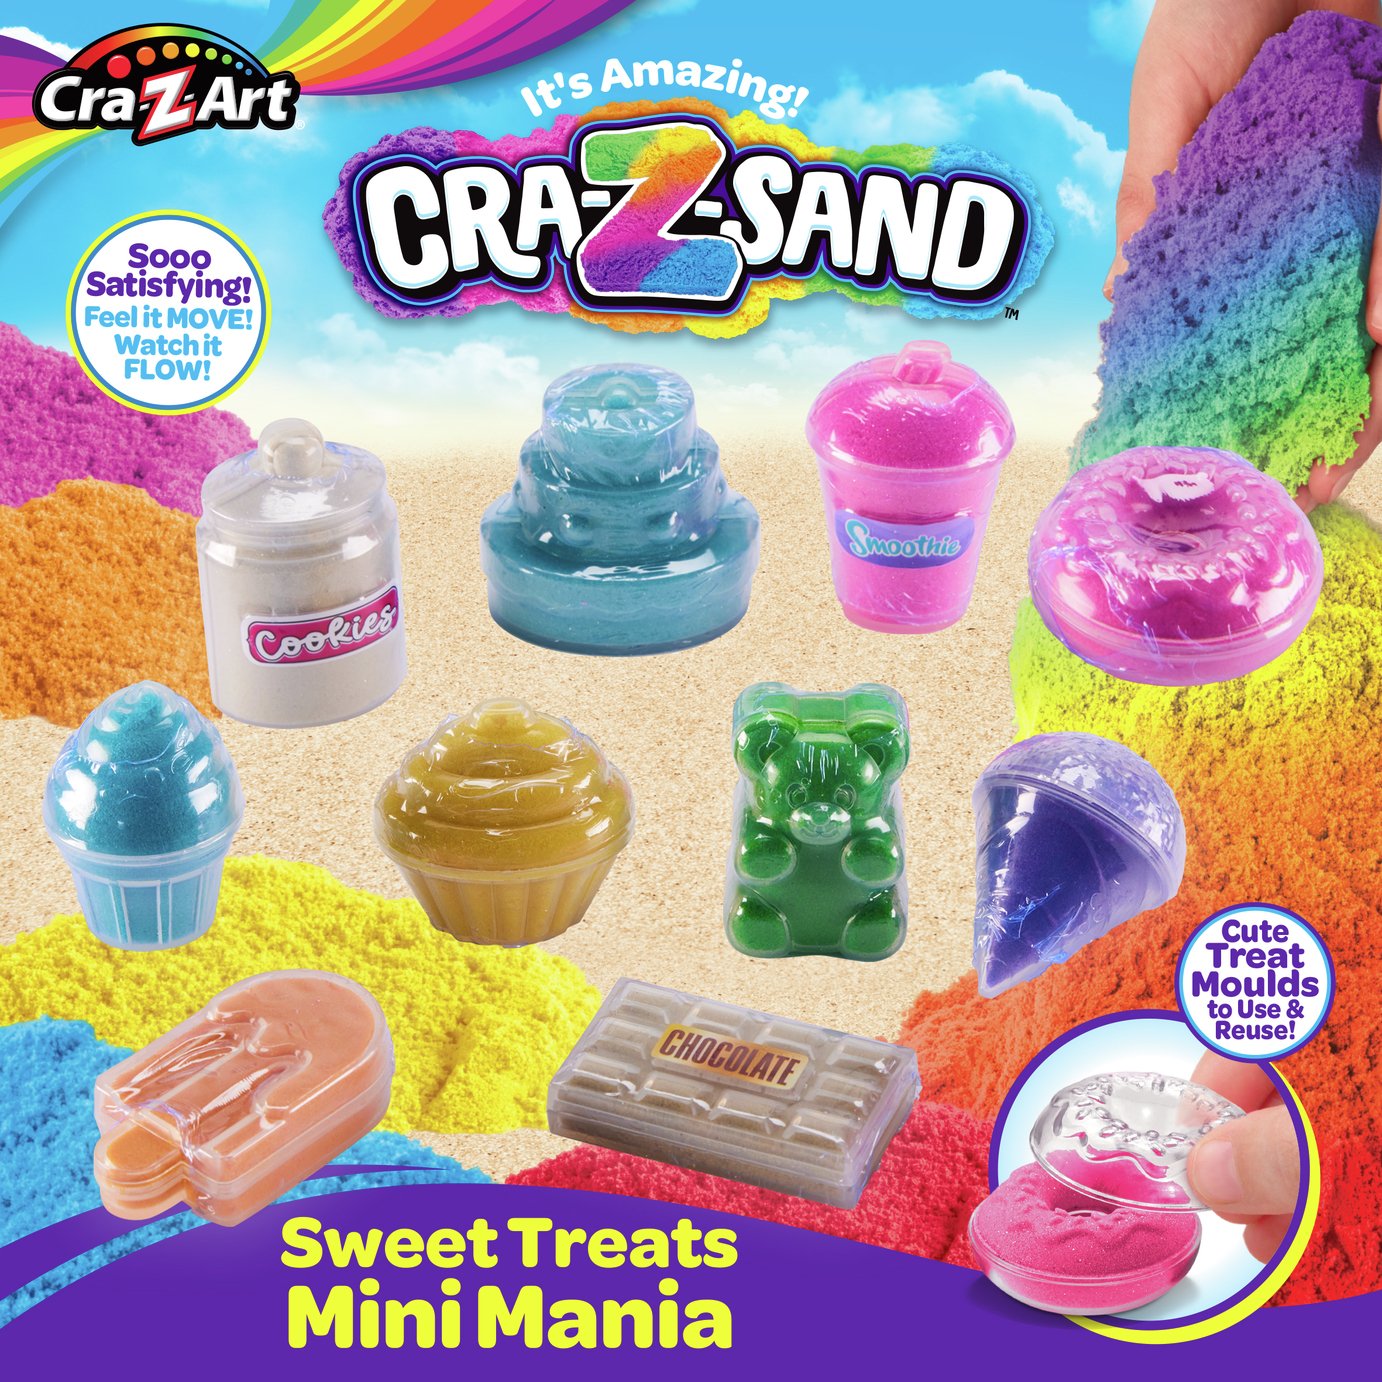 Cra-Z-Sand Sweet Treats Mini Mania